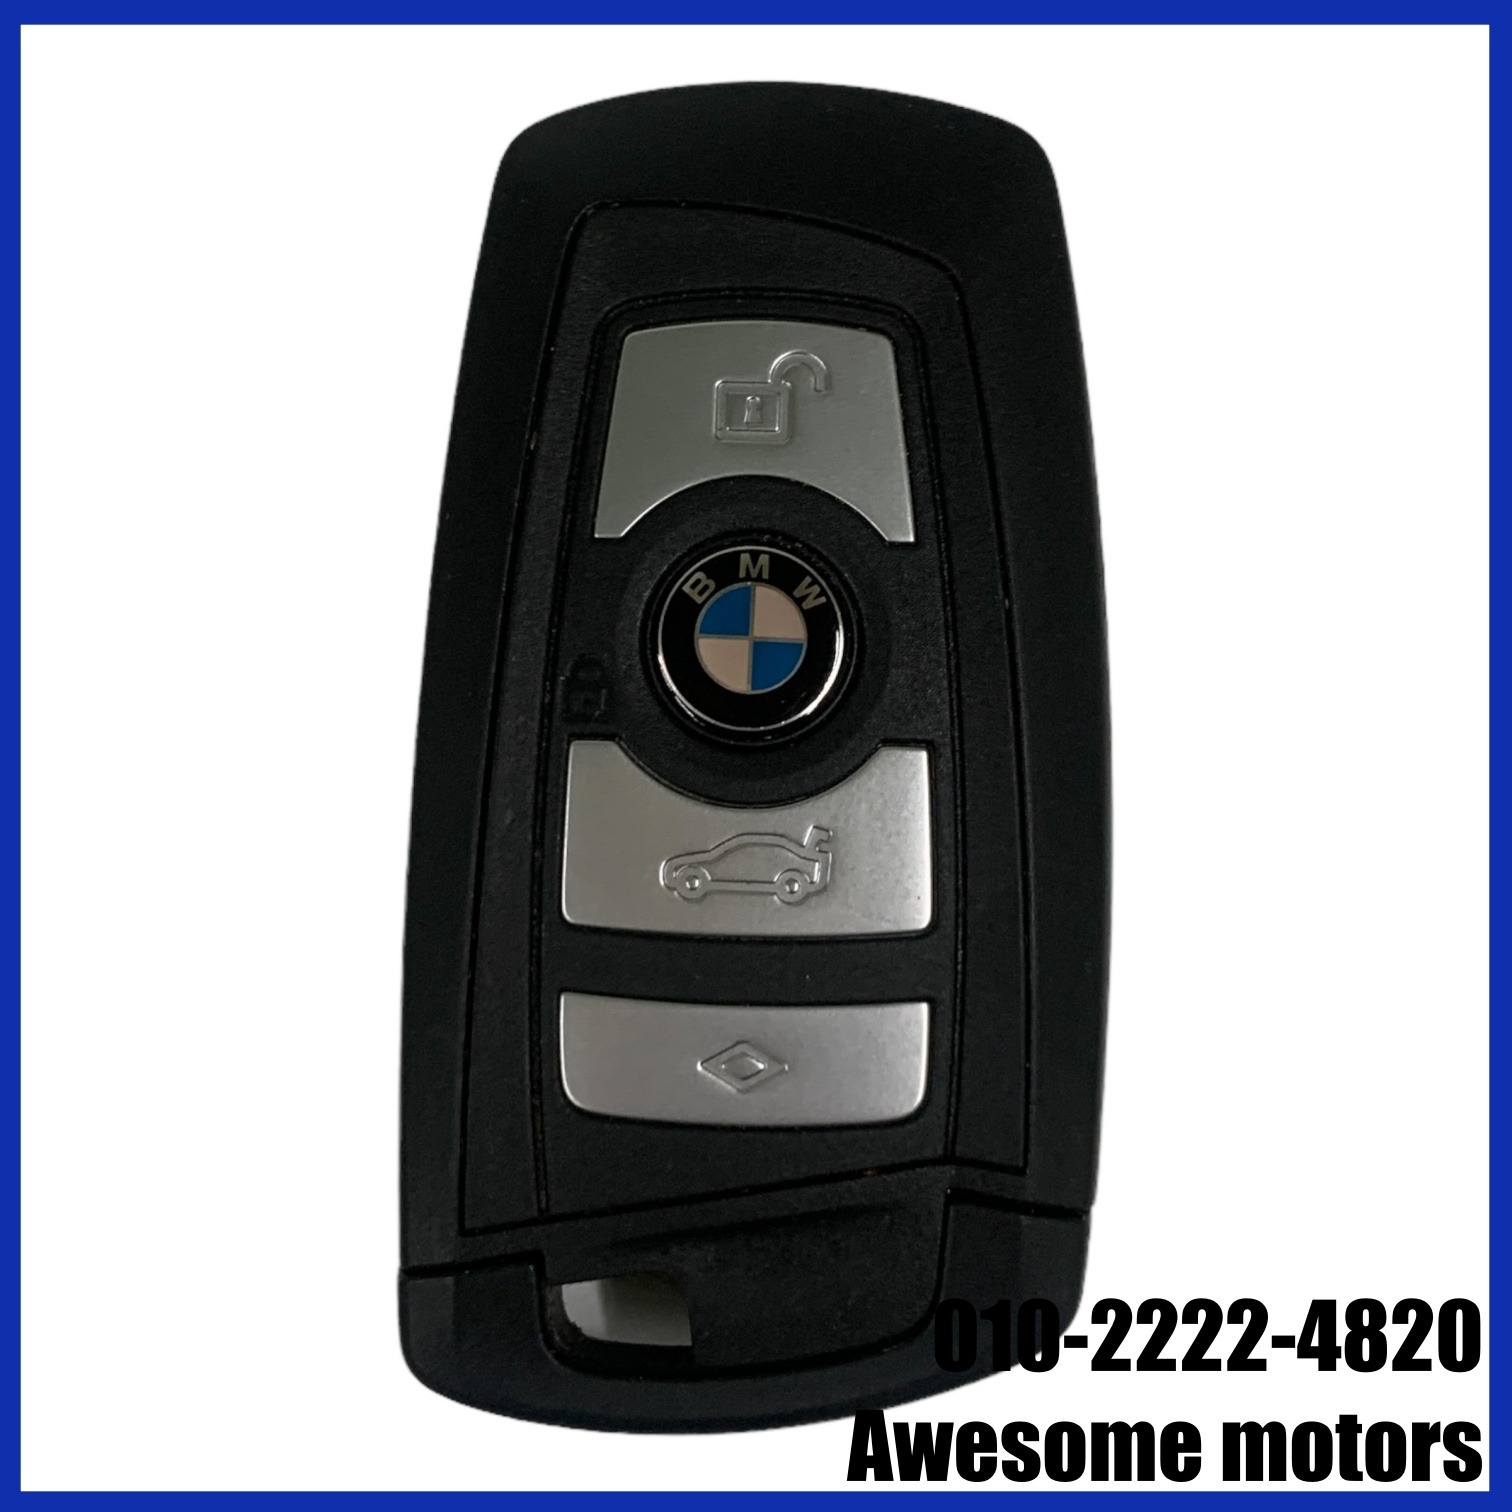 BMW 5시리즈 F10 520D LCi 스마트 키 8723591